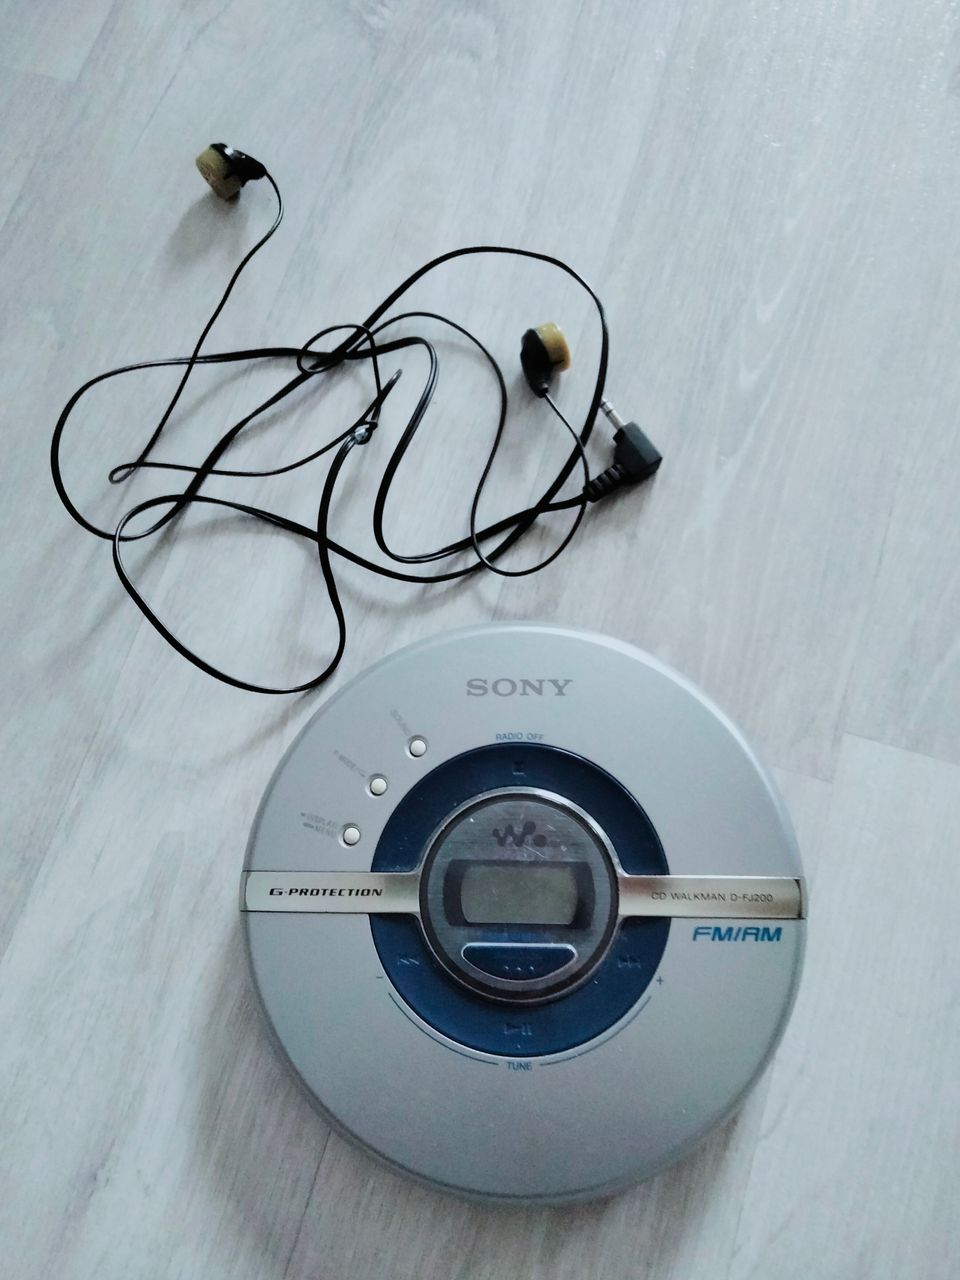 Sony cd walkman d-fj200